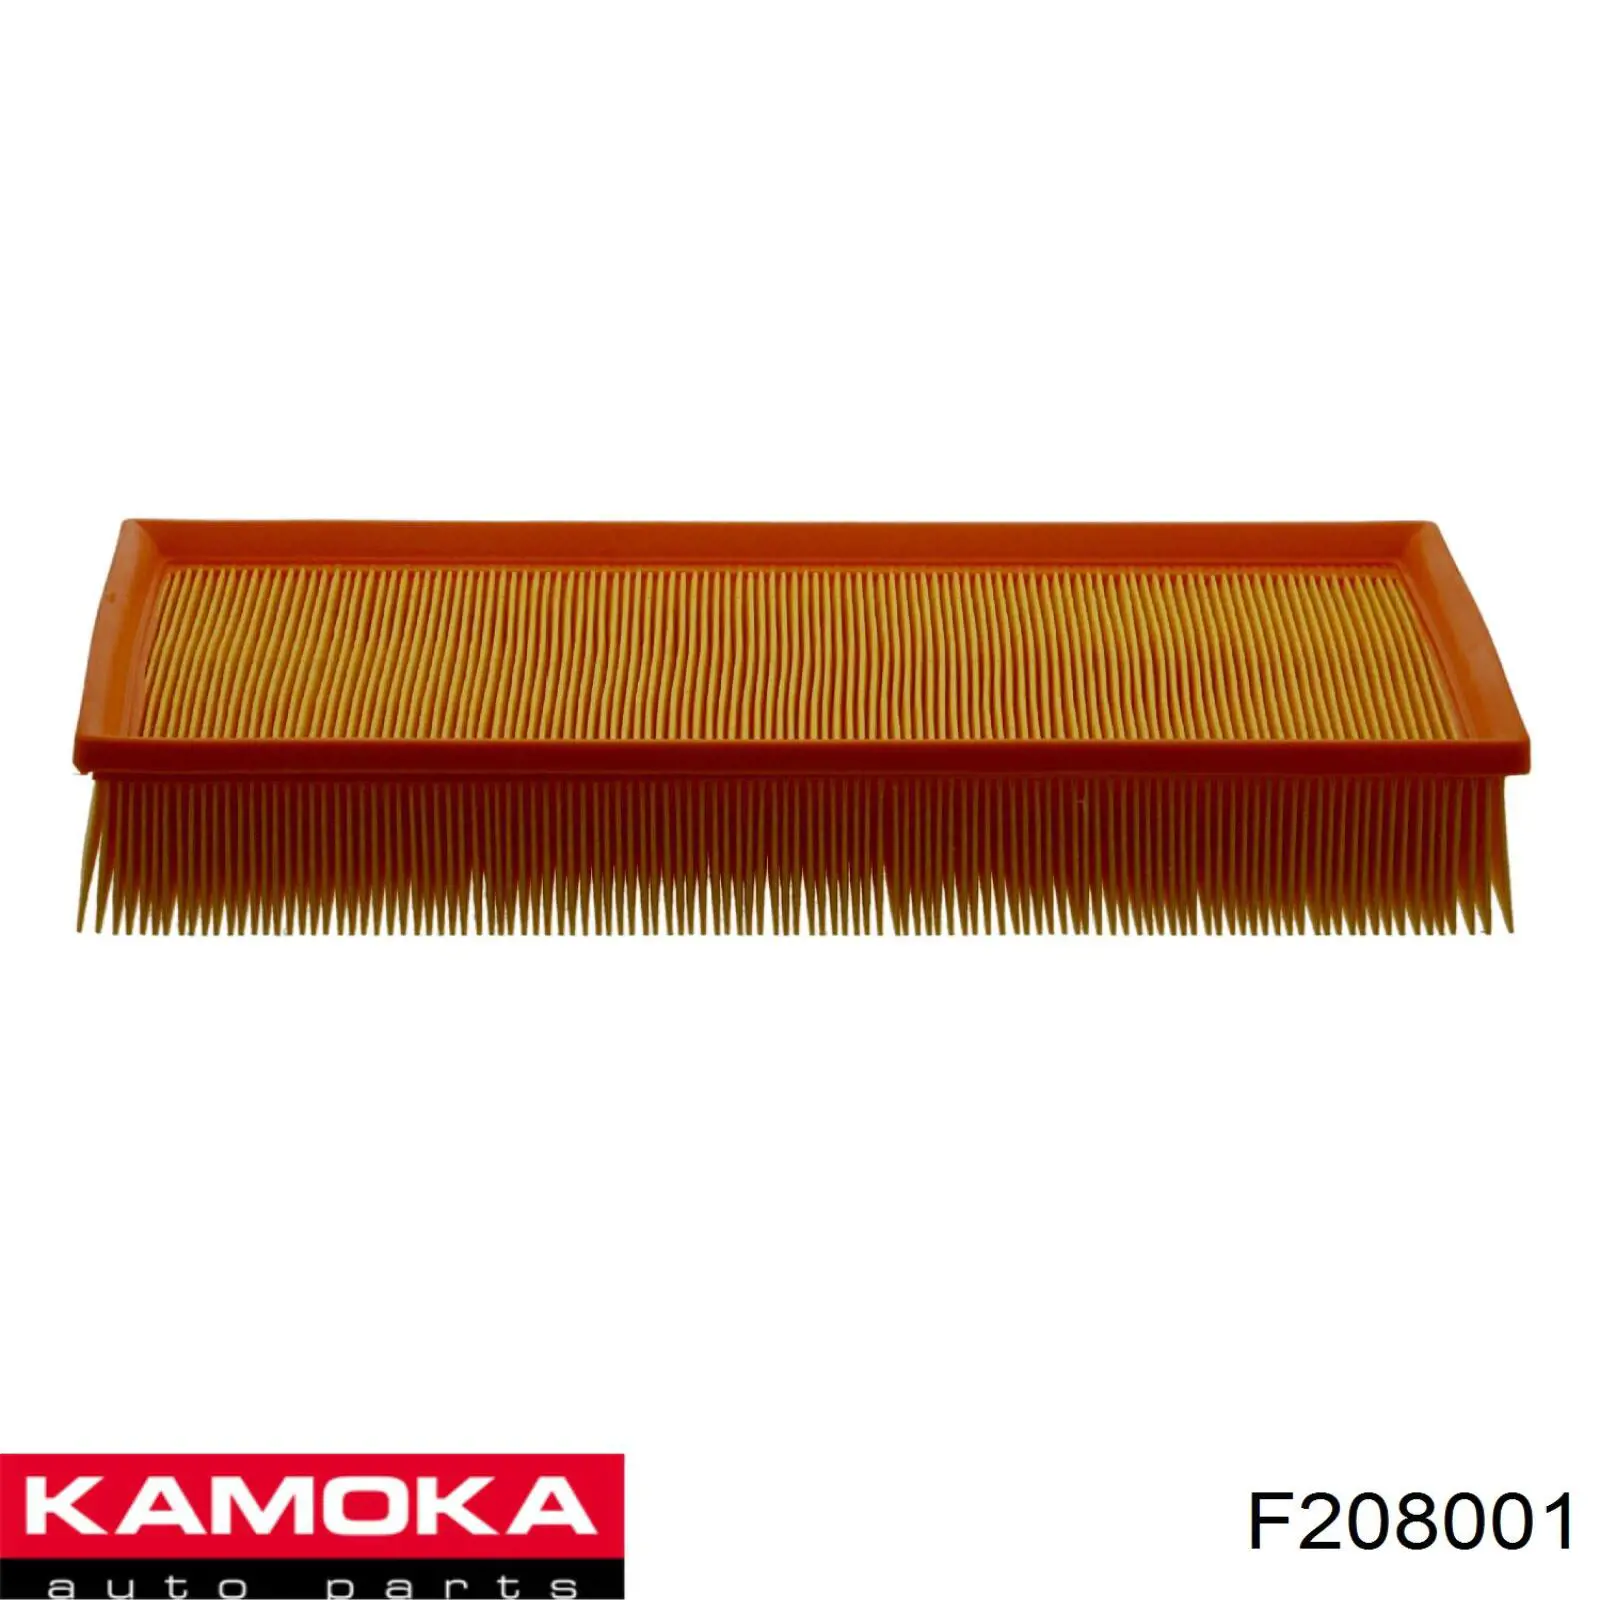 F208001 Kamoka filtro de aire